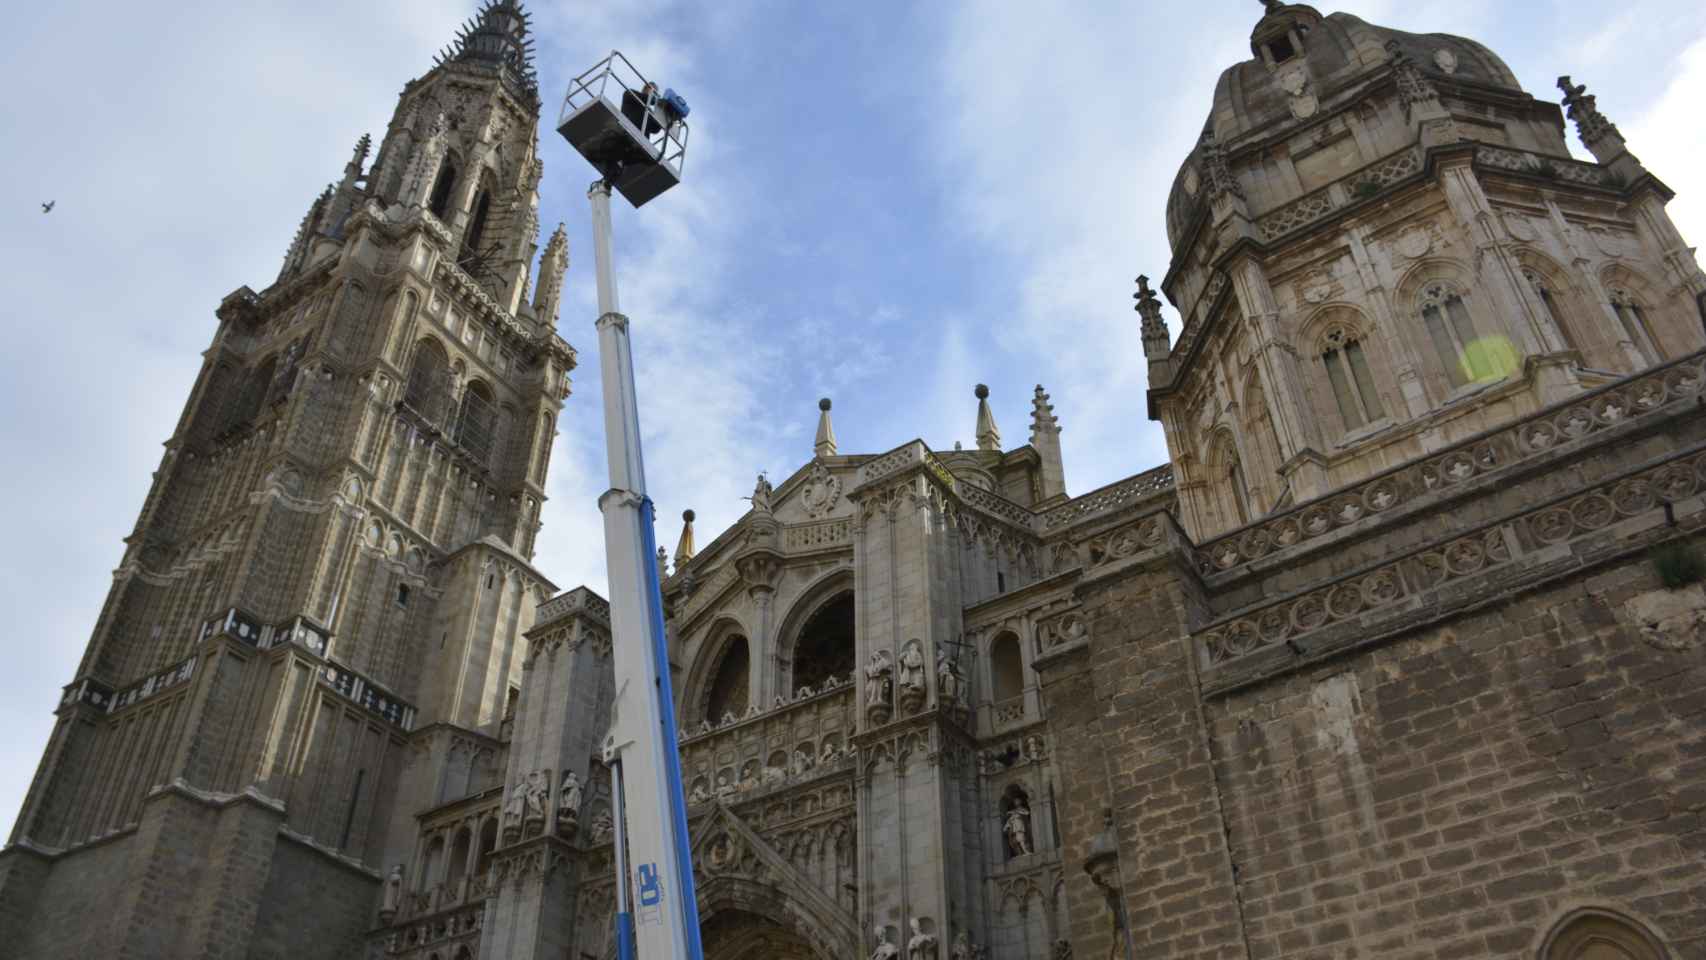 La plataforma del nuevo camión del Ayuntamiento de Toledo alcanza 20 metros de altura.